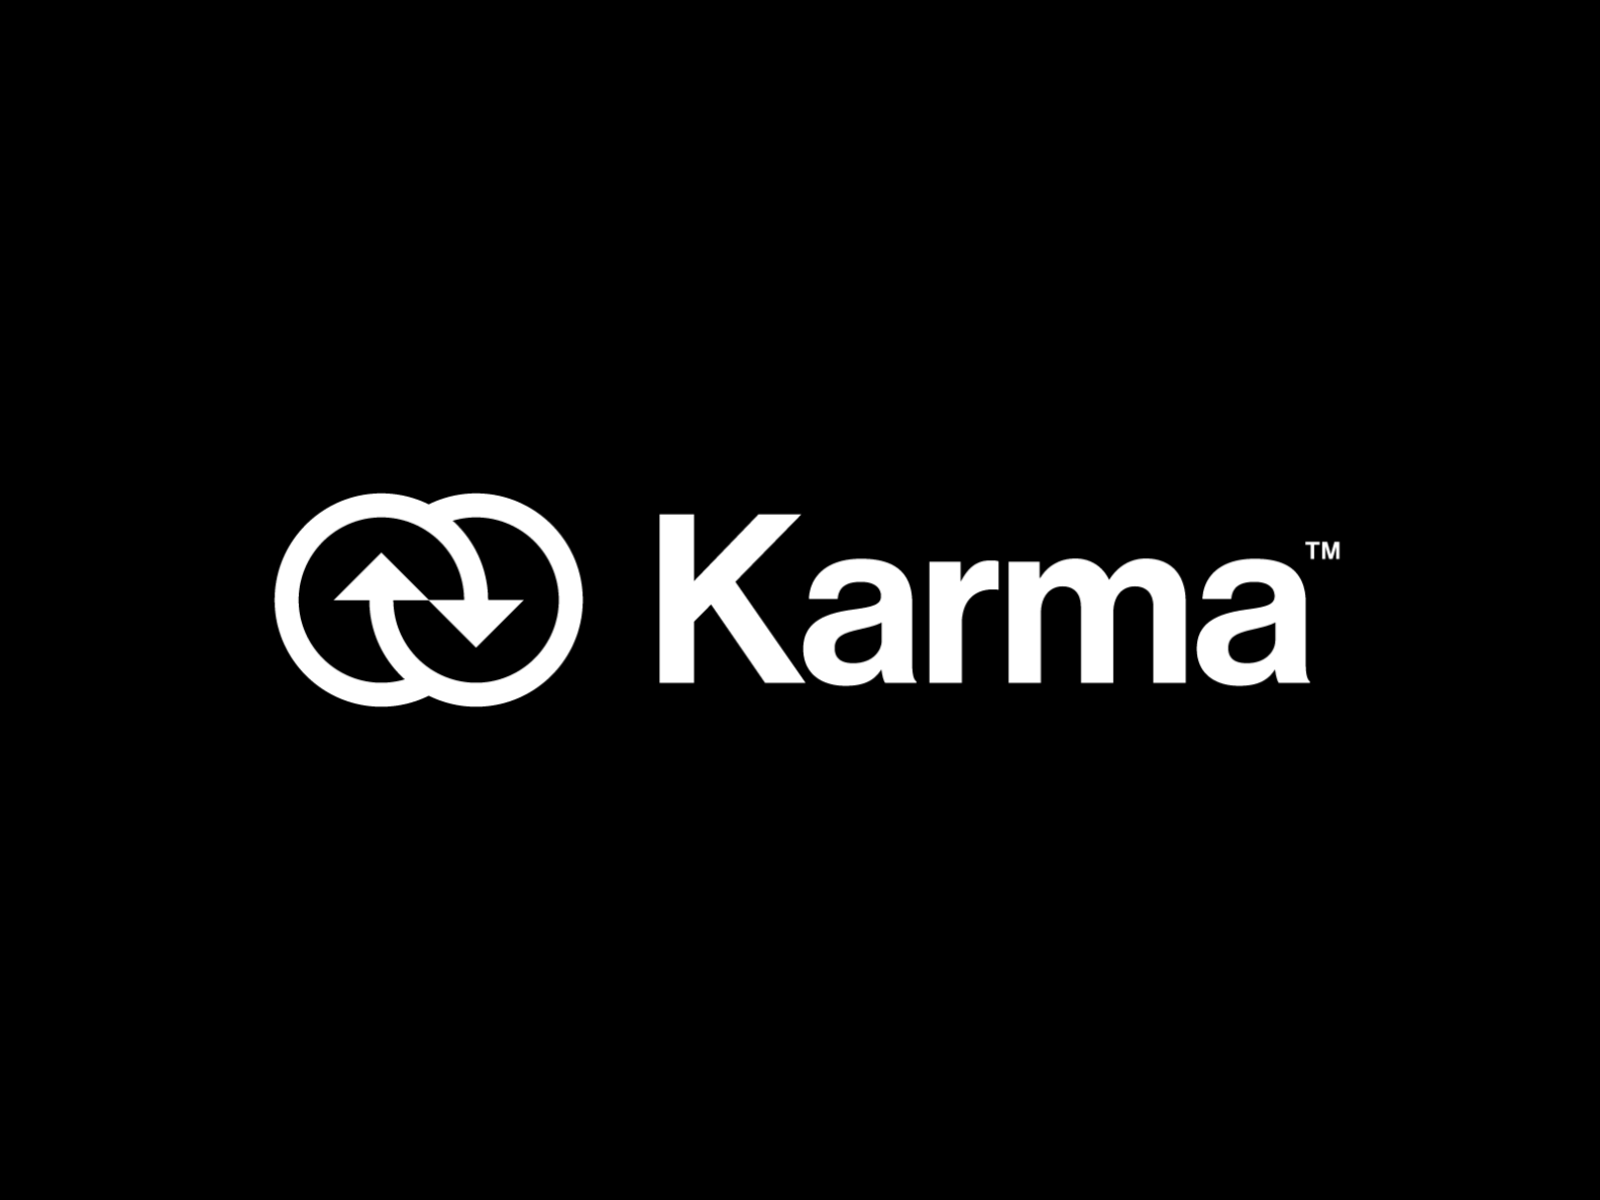 Karma Collection